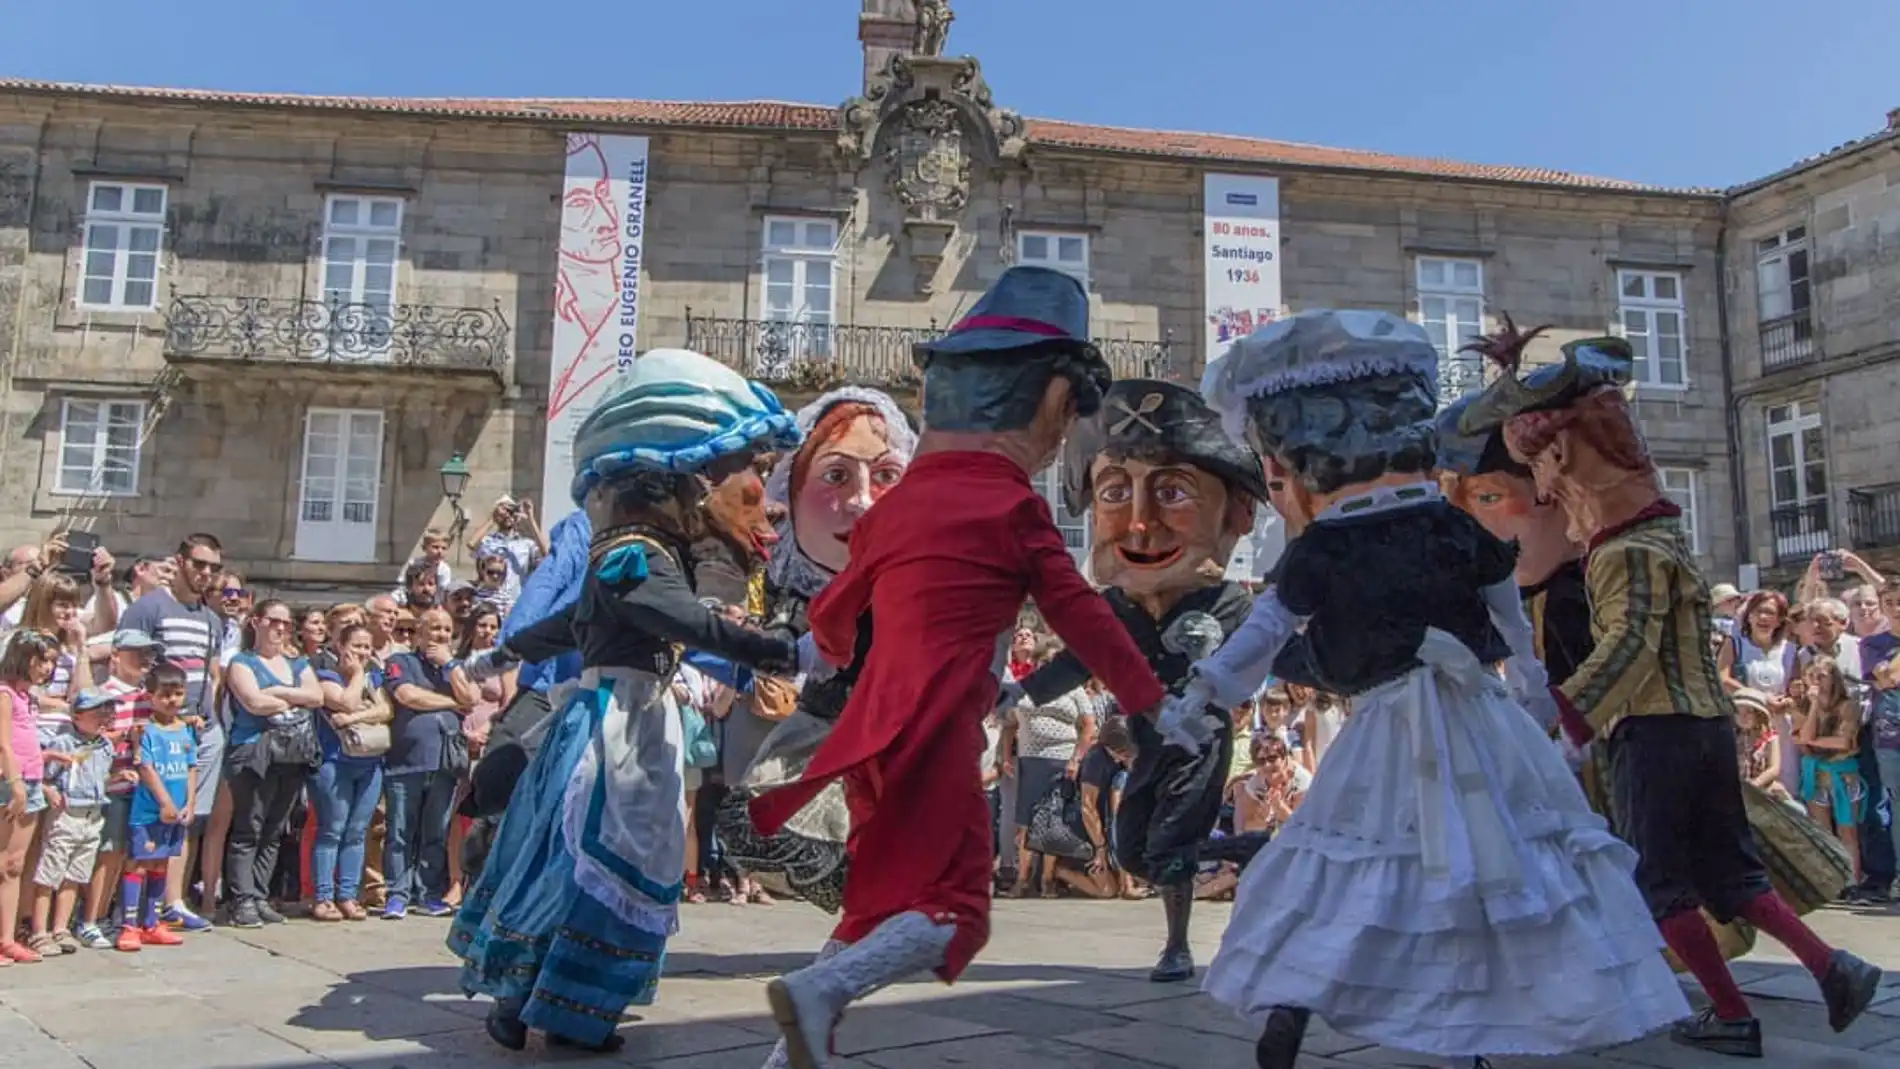 Anxo Martíns, 43 años como cabezudo en Santiago: "los cabezudos es de lo más tradicional de las fiestas compostelanas y mantenemos las coreografías de hace años" 